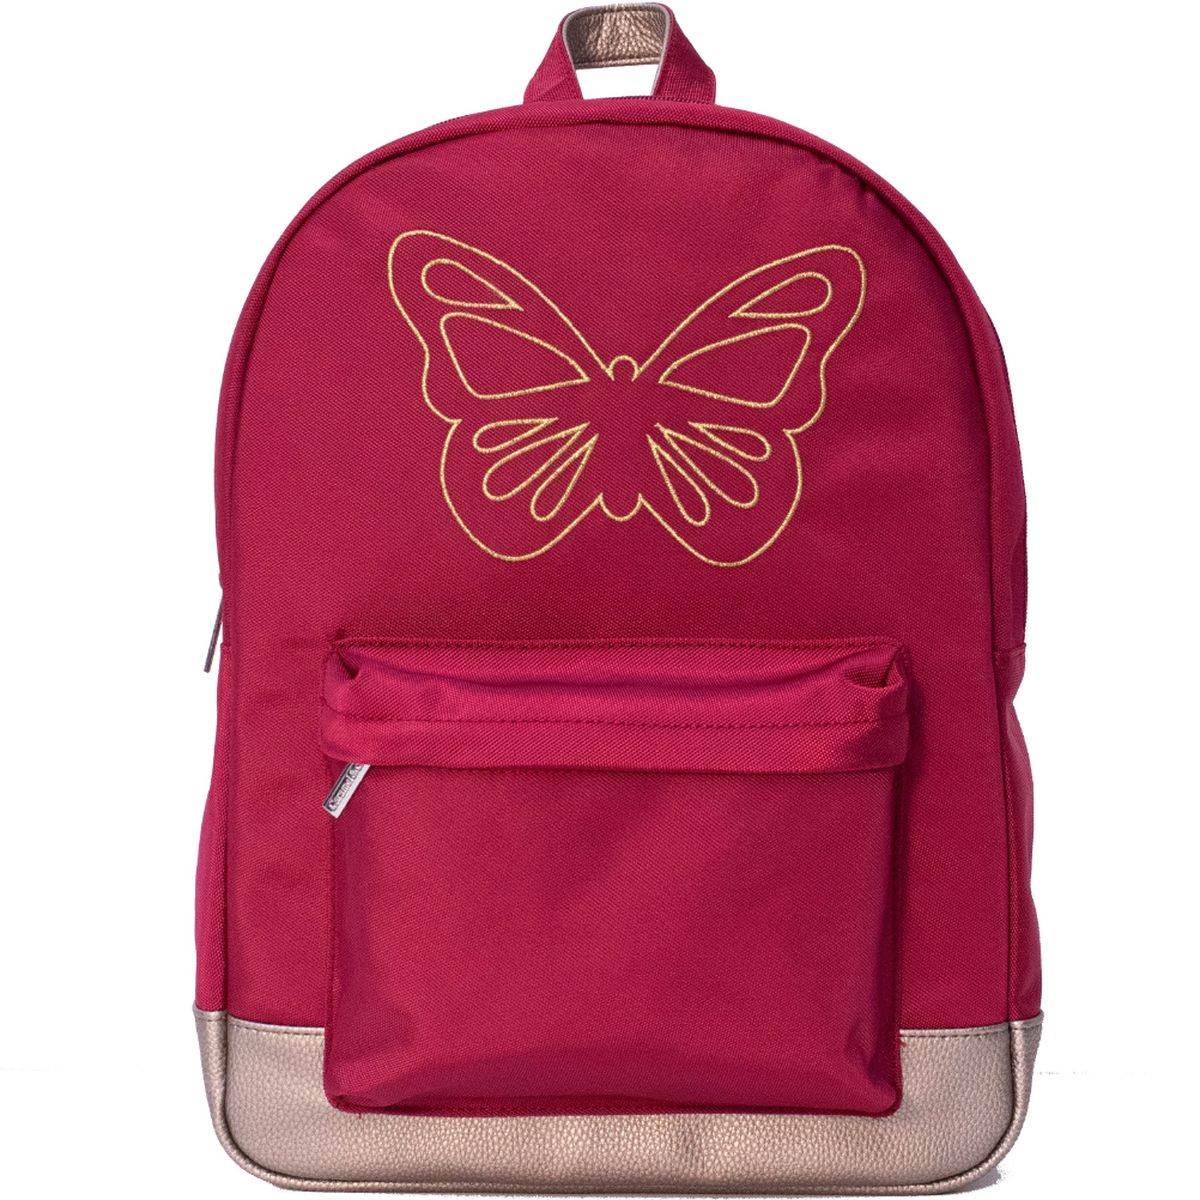 Caramel et cie shoulder bag - Ruby Butterfly